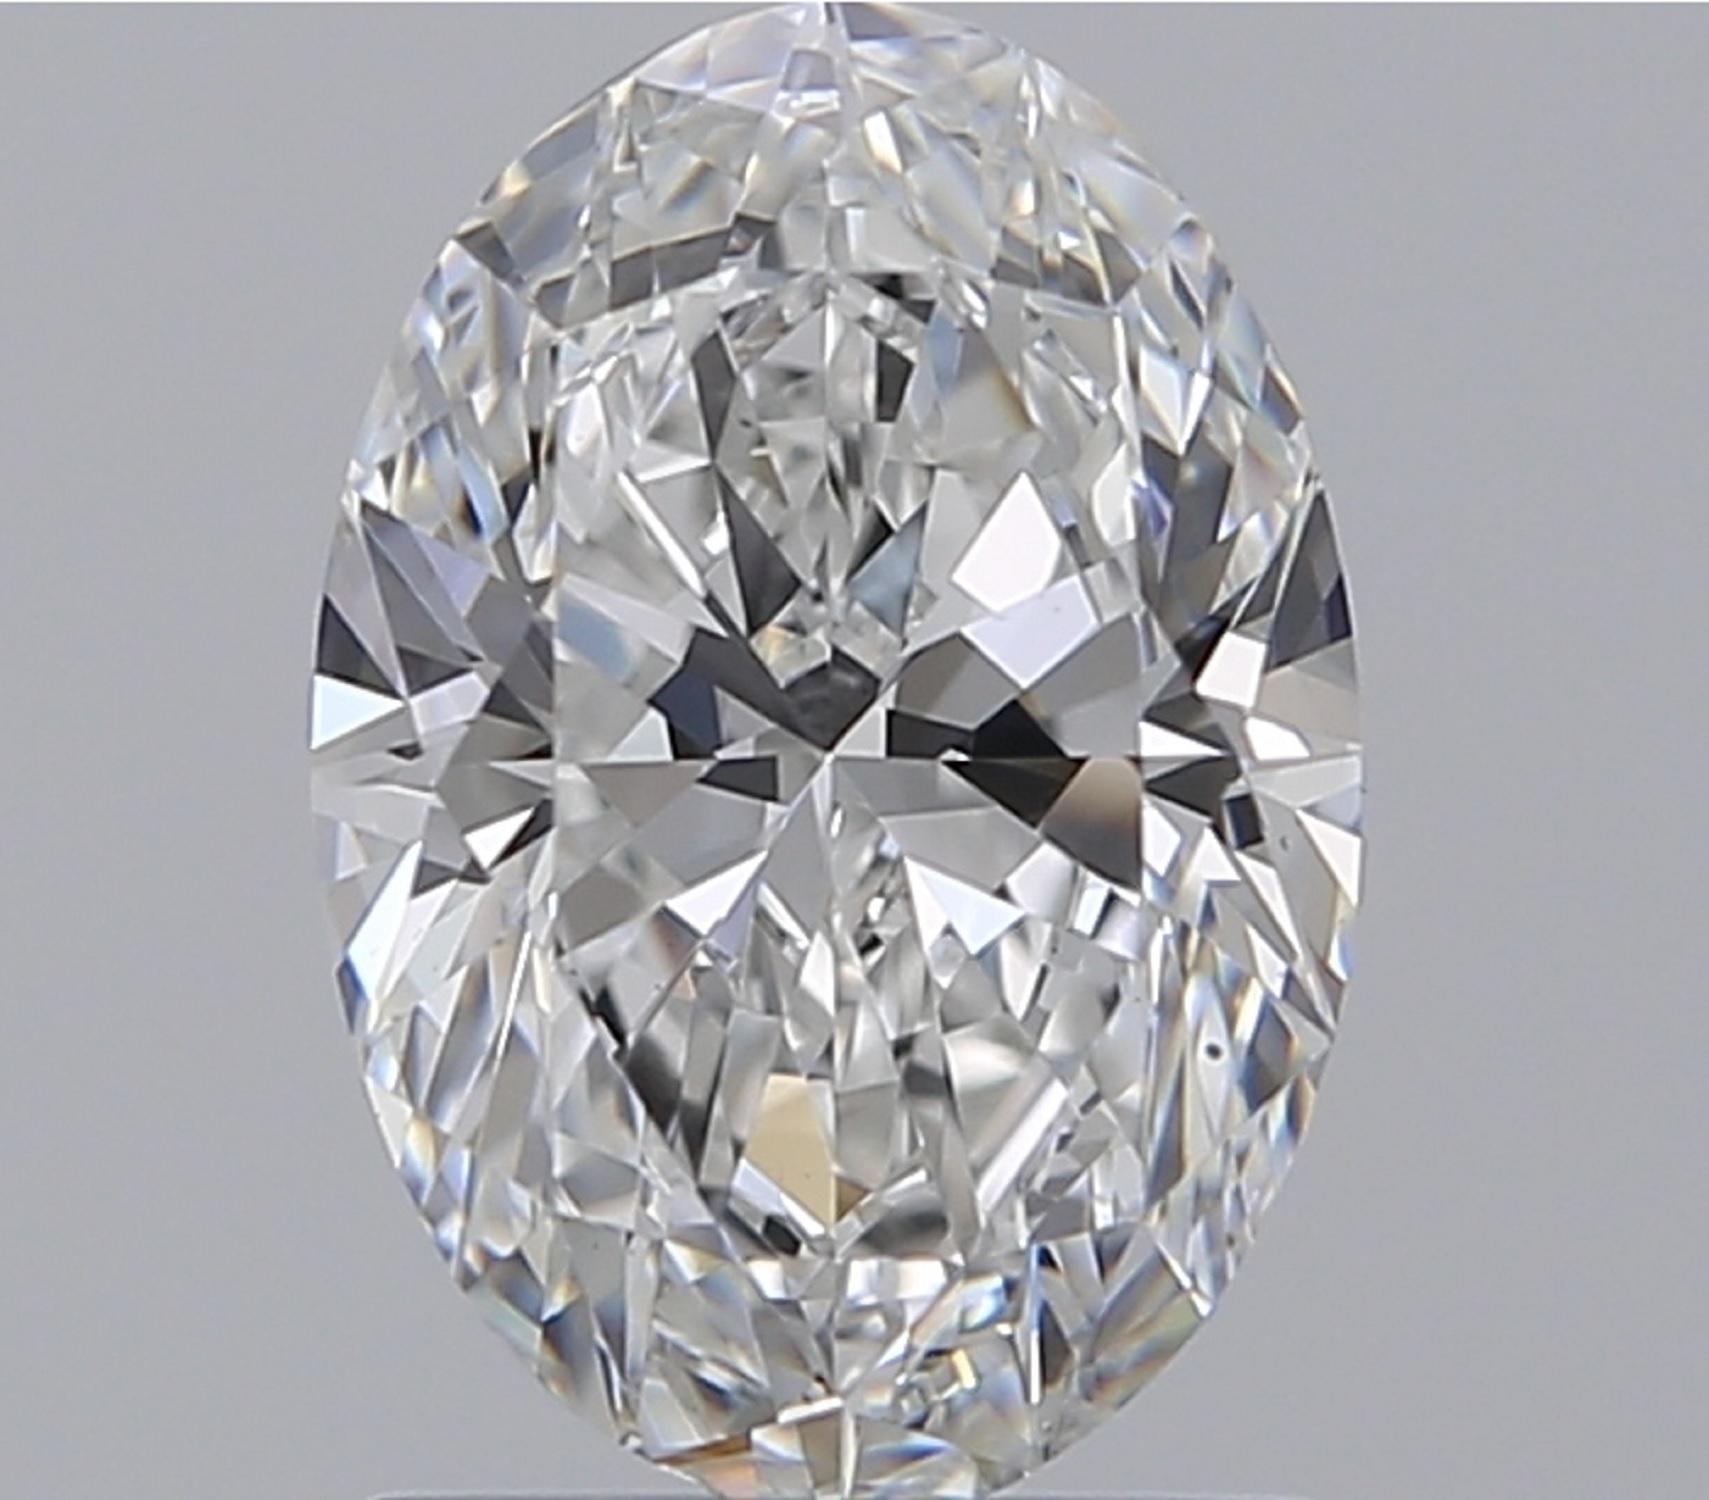 1.5 carat oval diamond ring